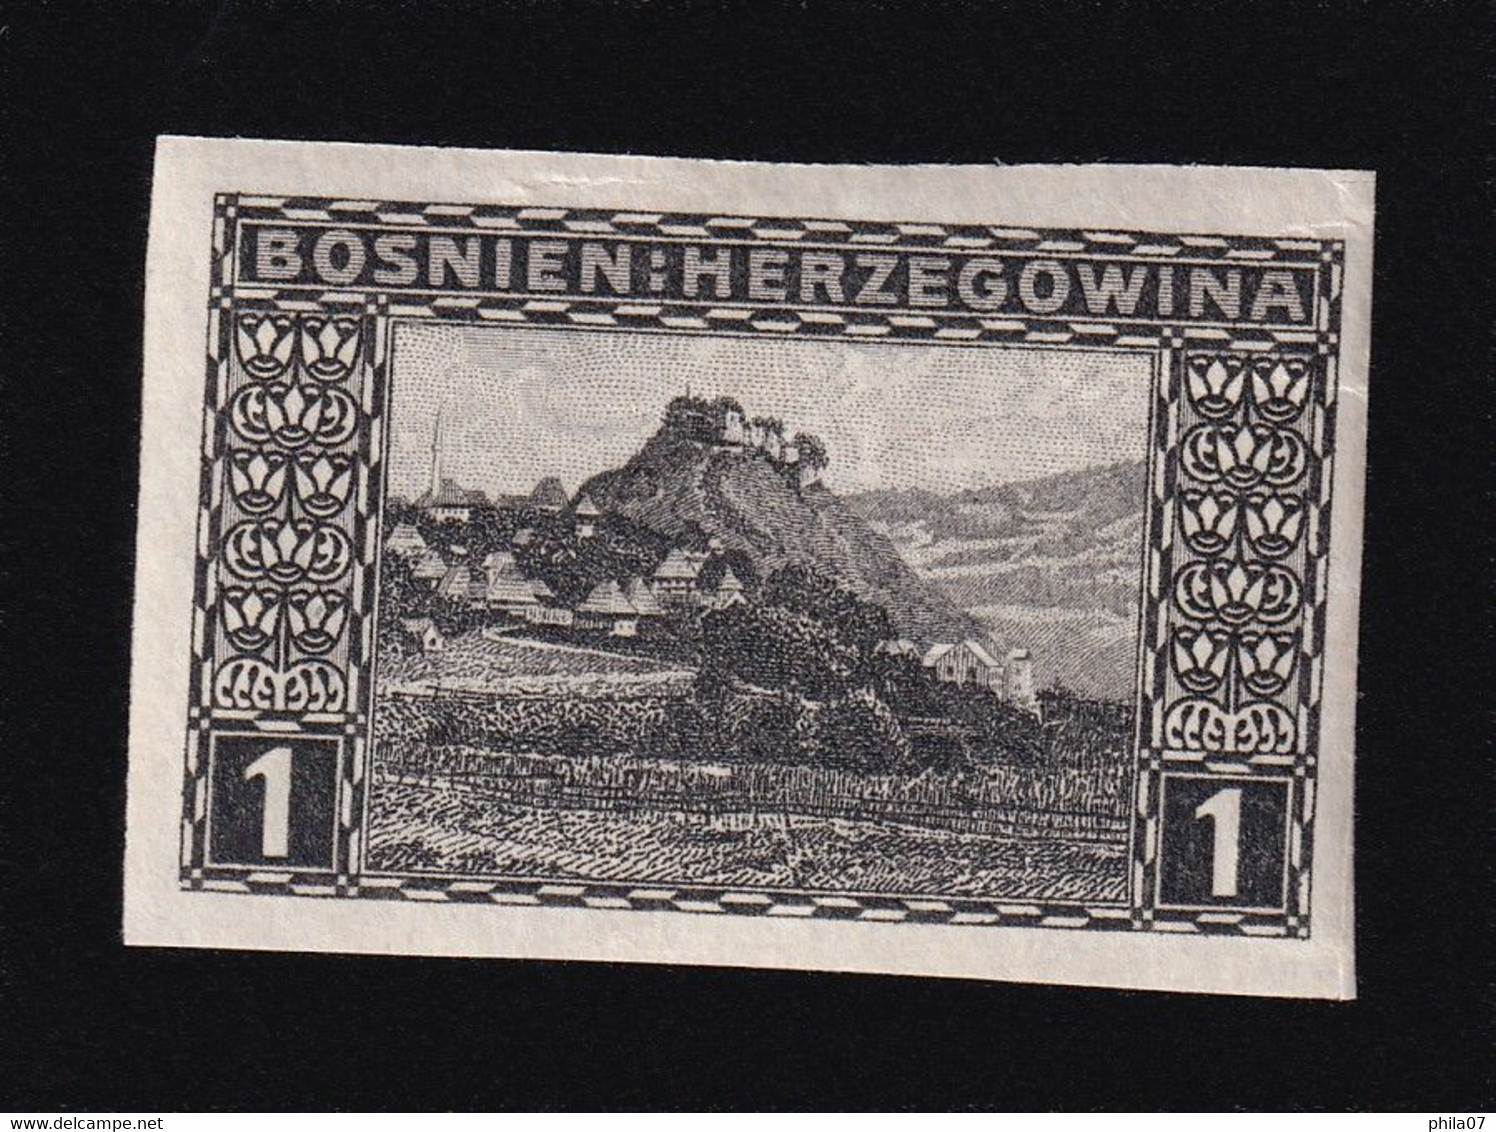 BOSNIA AND HERZEGOVINA - Landscape Stamp 1 Heller, Imperforate Stamp, MNH - Bosnia And Herzegovina